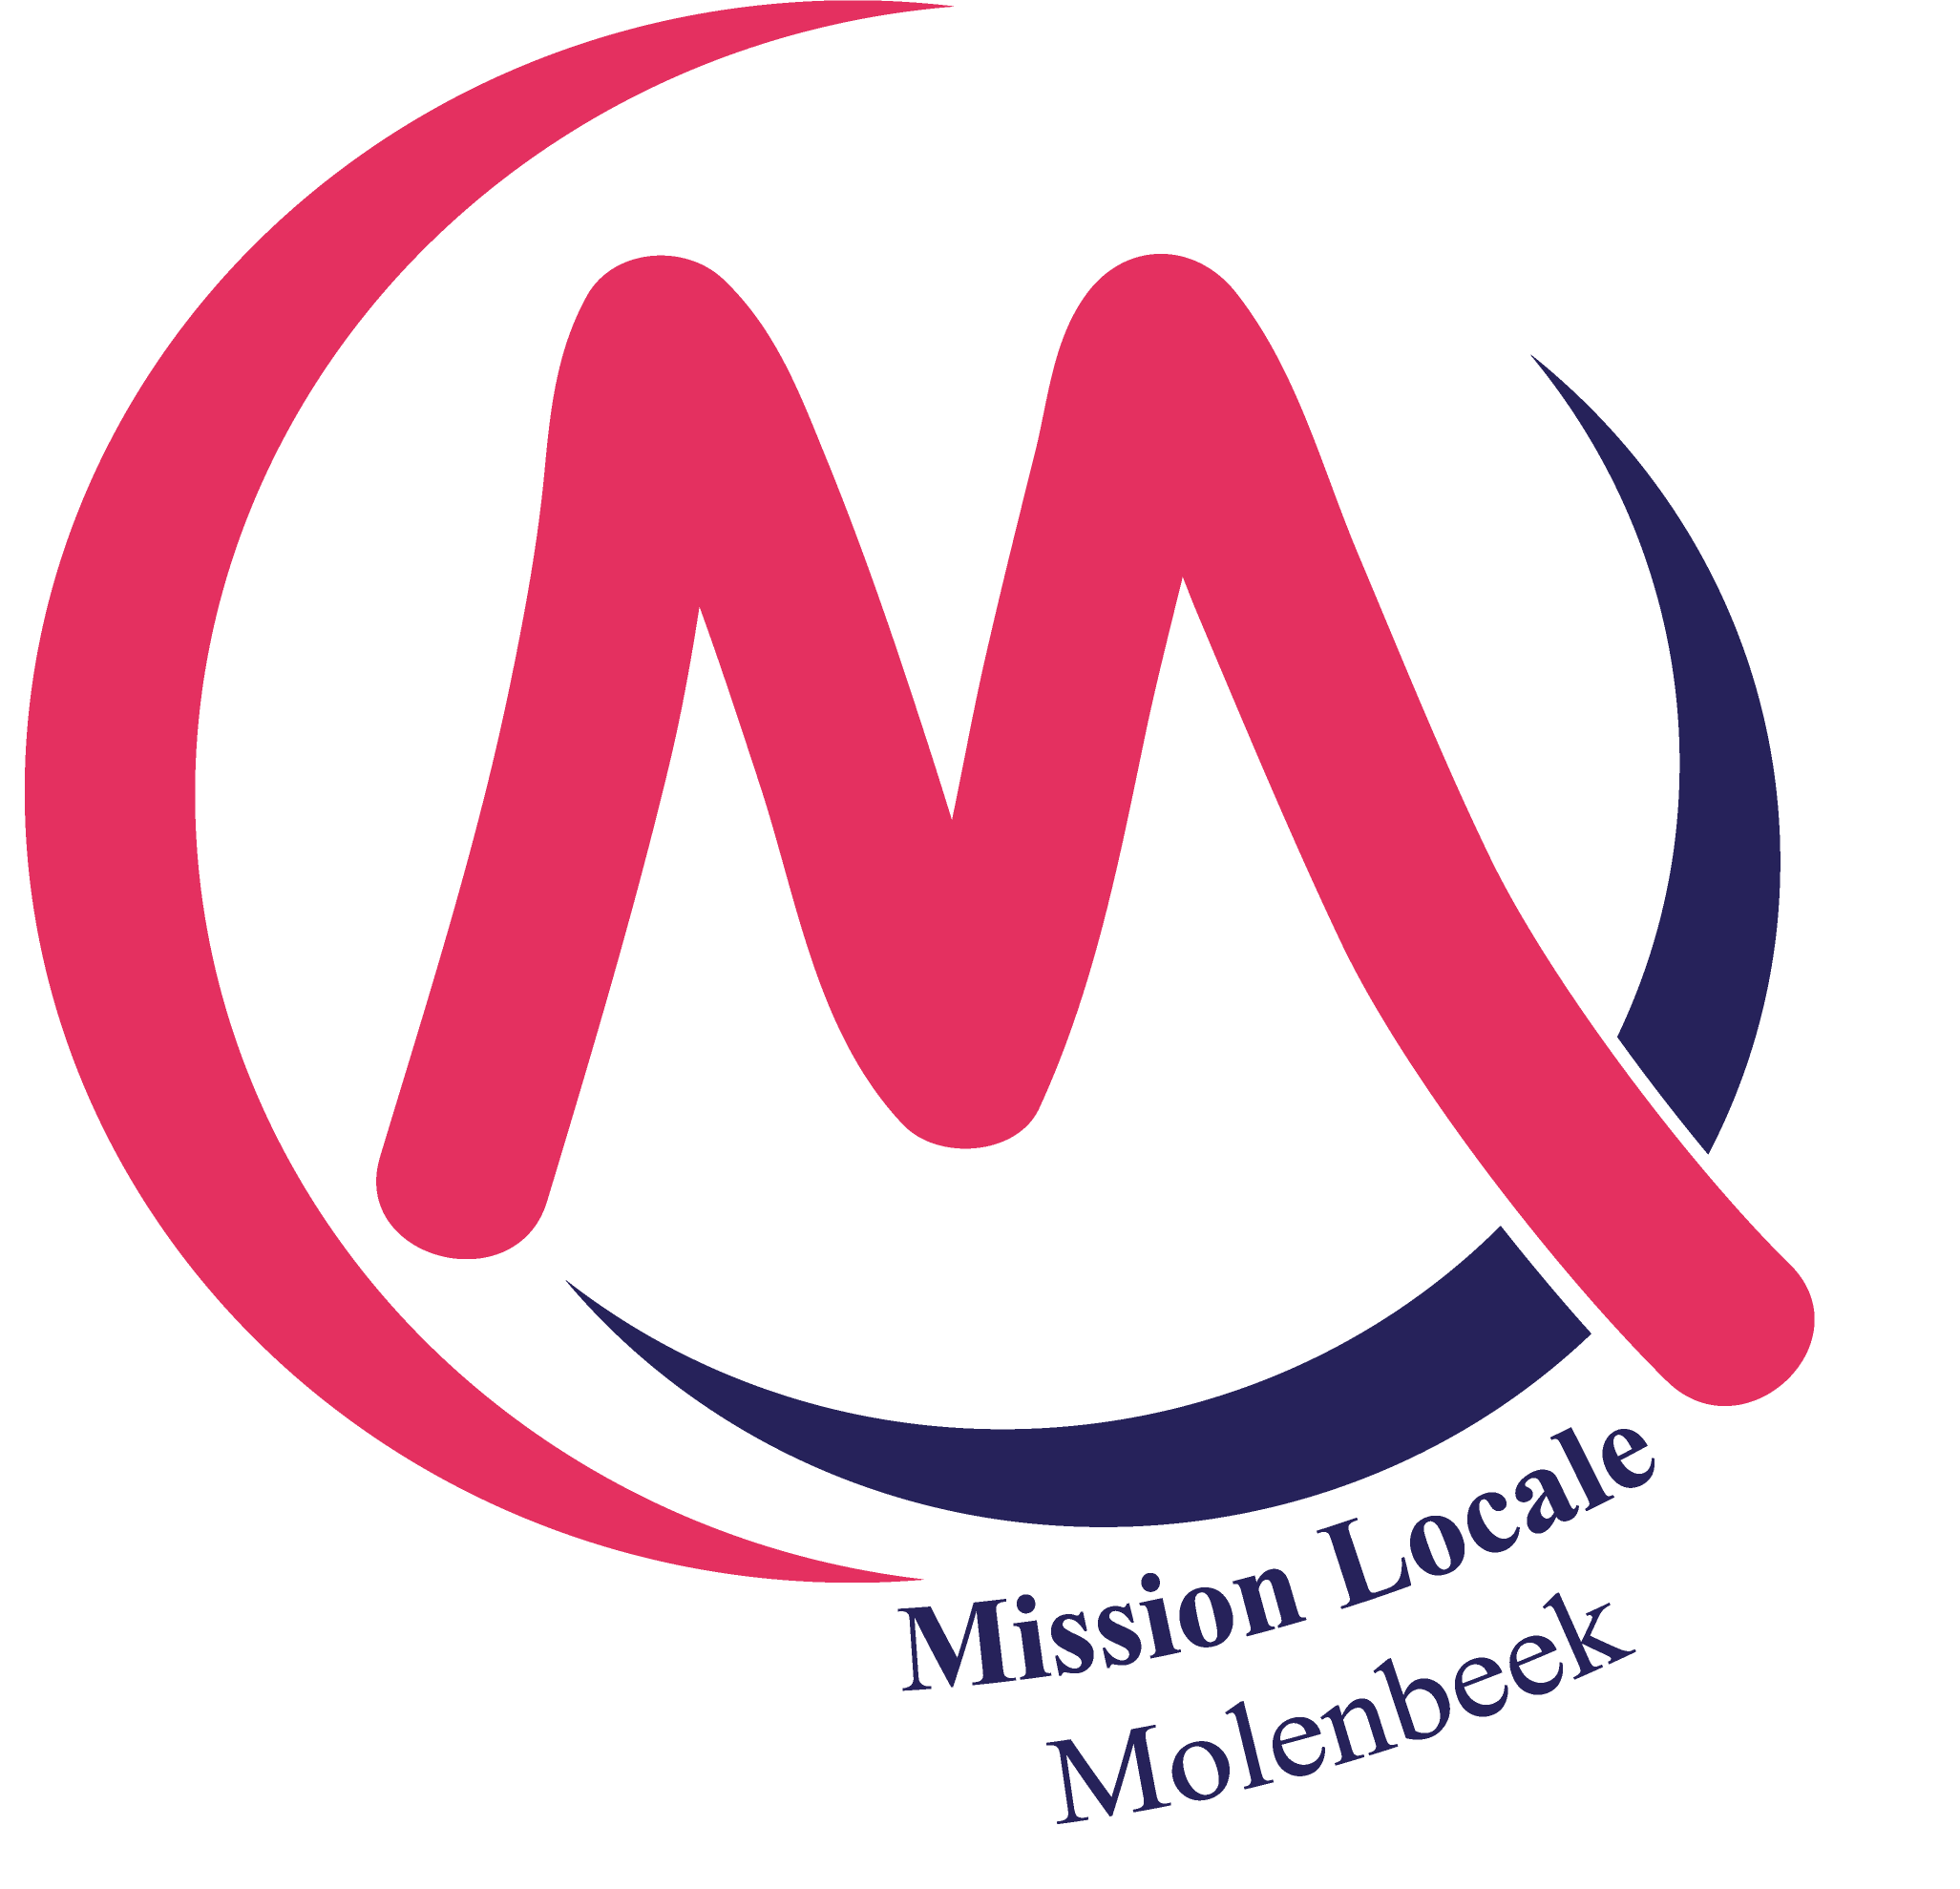 Mission Locale pour l'Emploi de Molenbeek